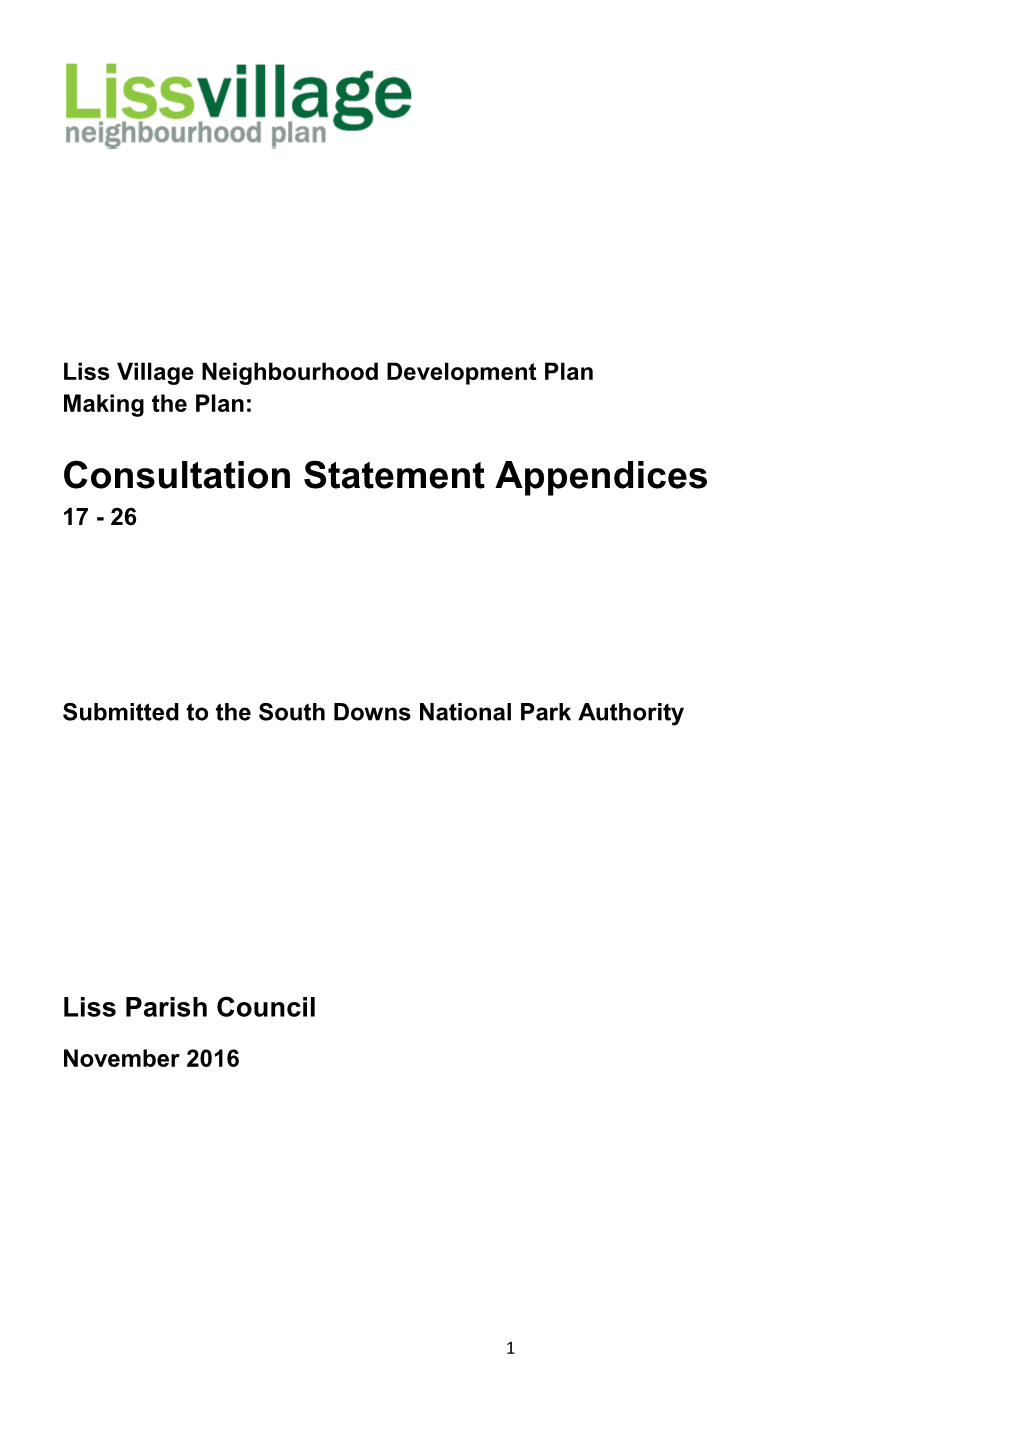 Consultation Statement Appendices 17 - 26